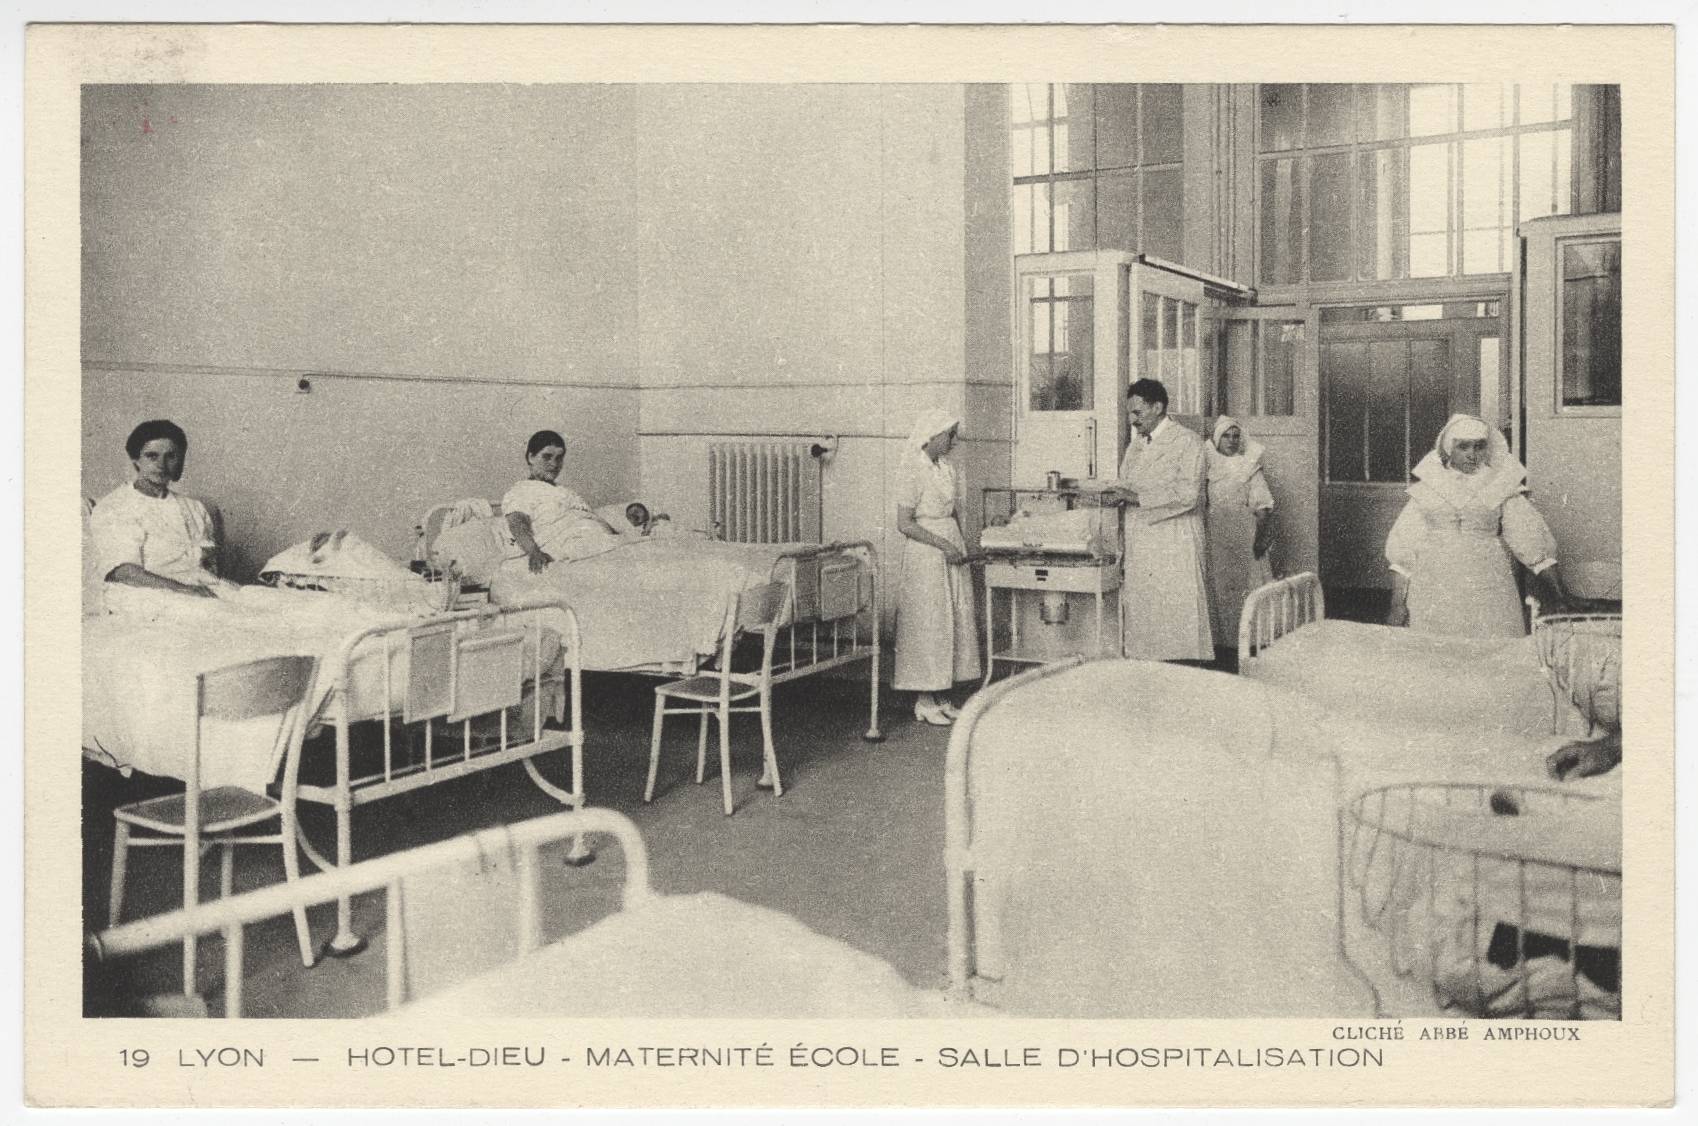 Lyon - Hôtel-Dieu, maternité école, salle d'hospitalisation : carte postale NB (vers 1910, cote : 4FI/3588)